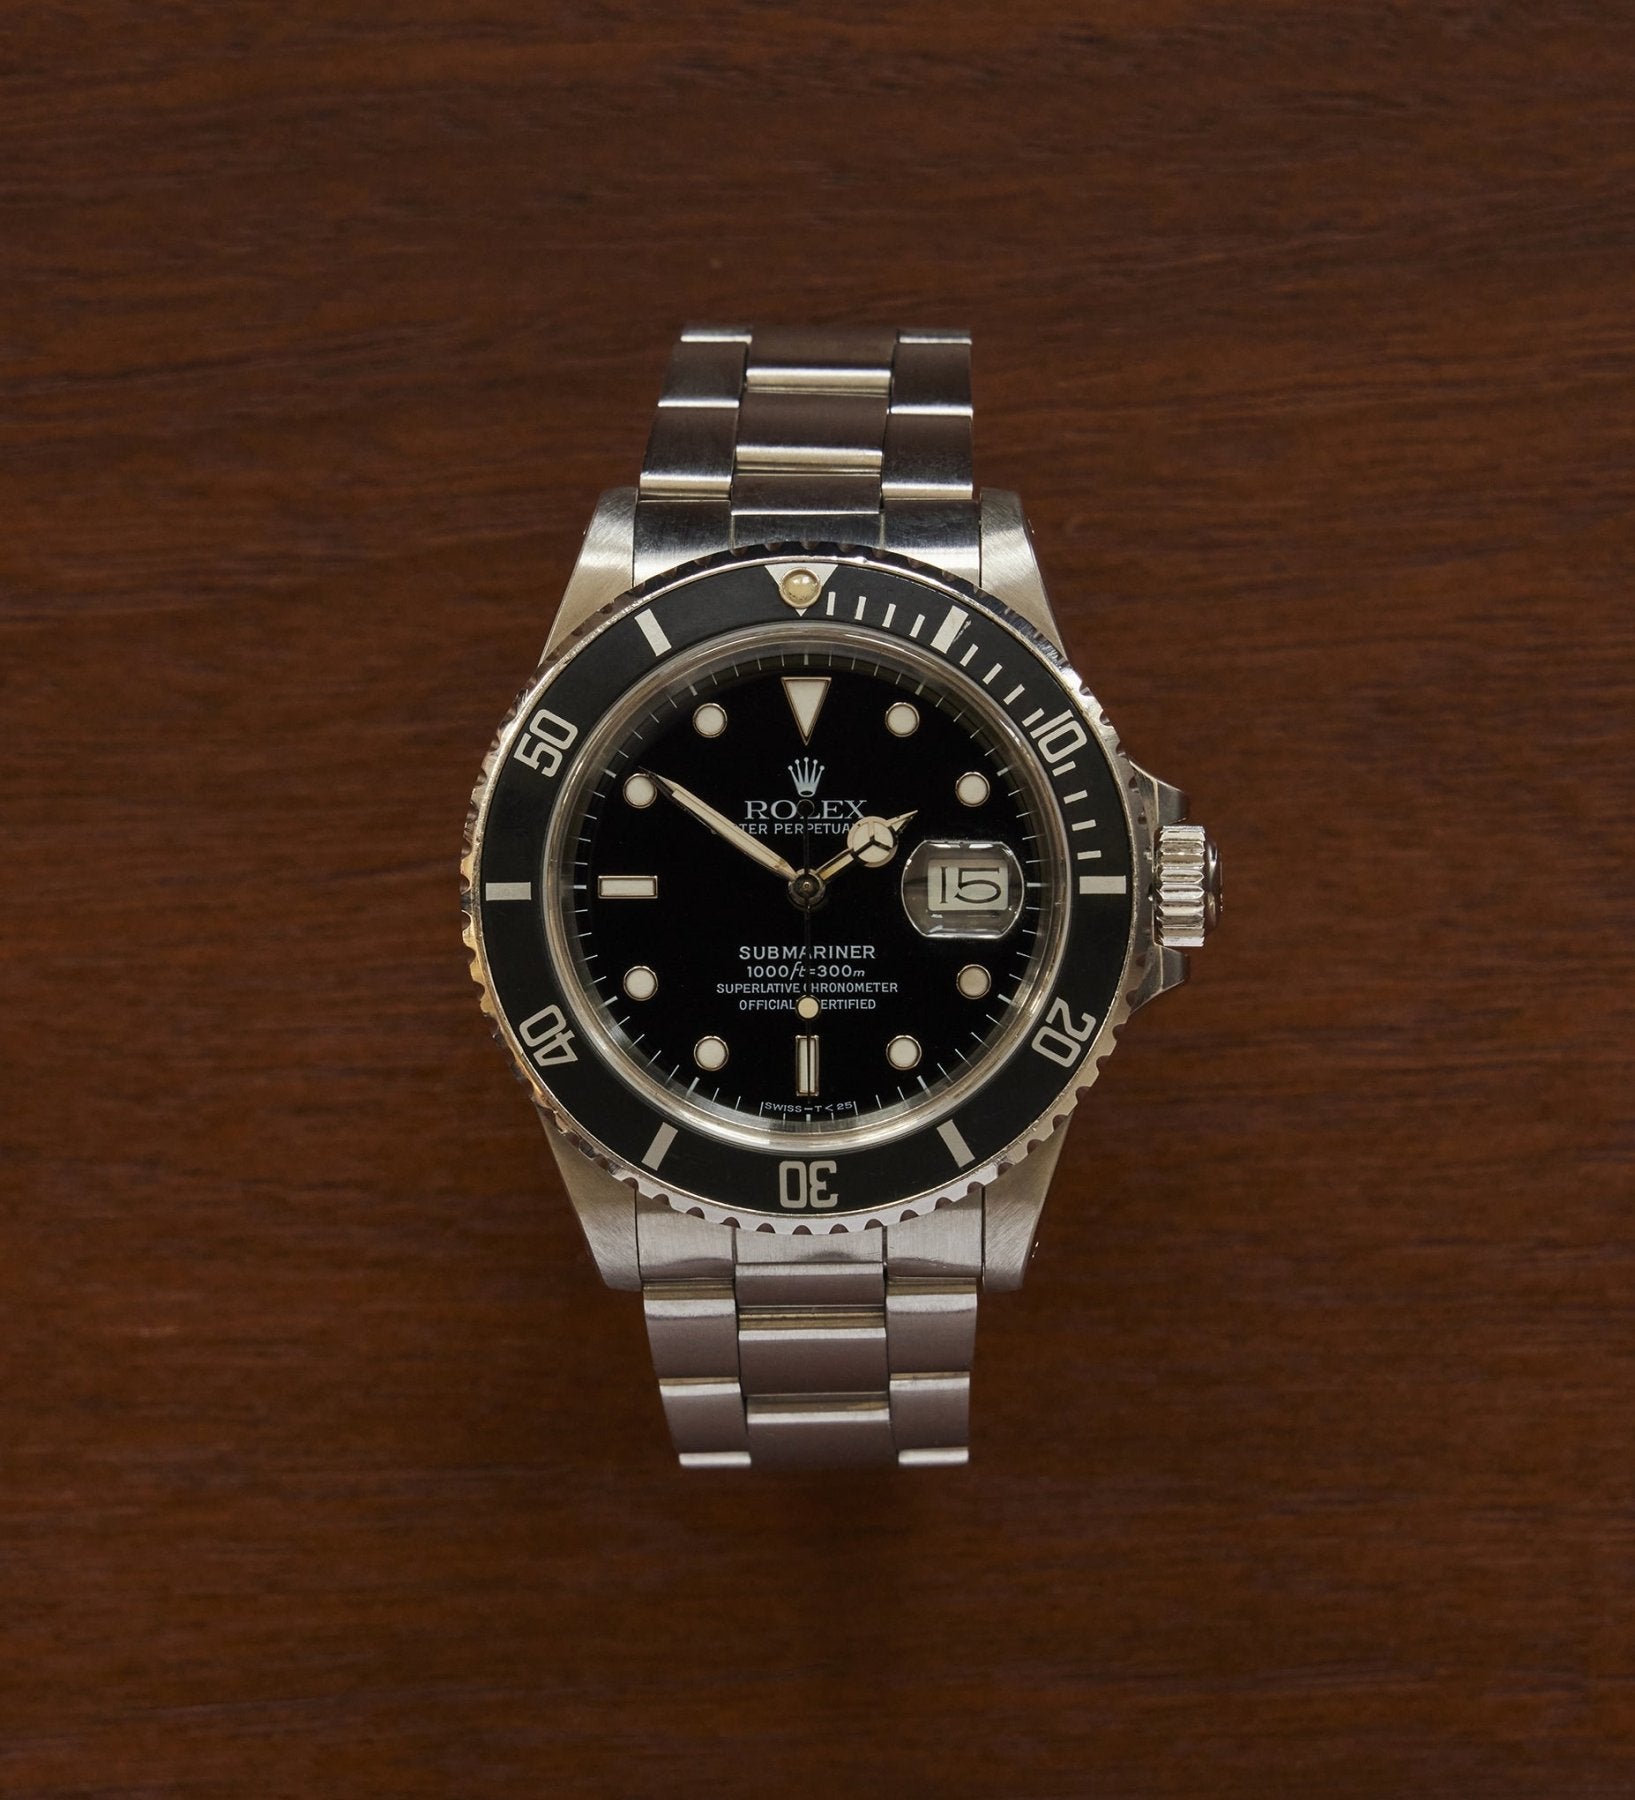 Rolex Submariner Date Watch Made in Switzerland 1986